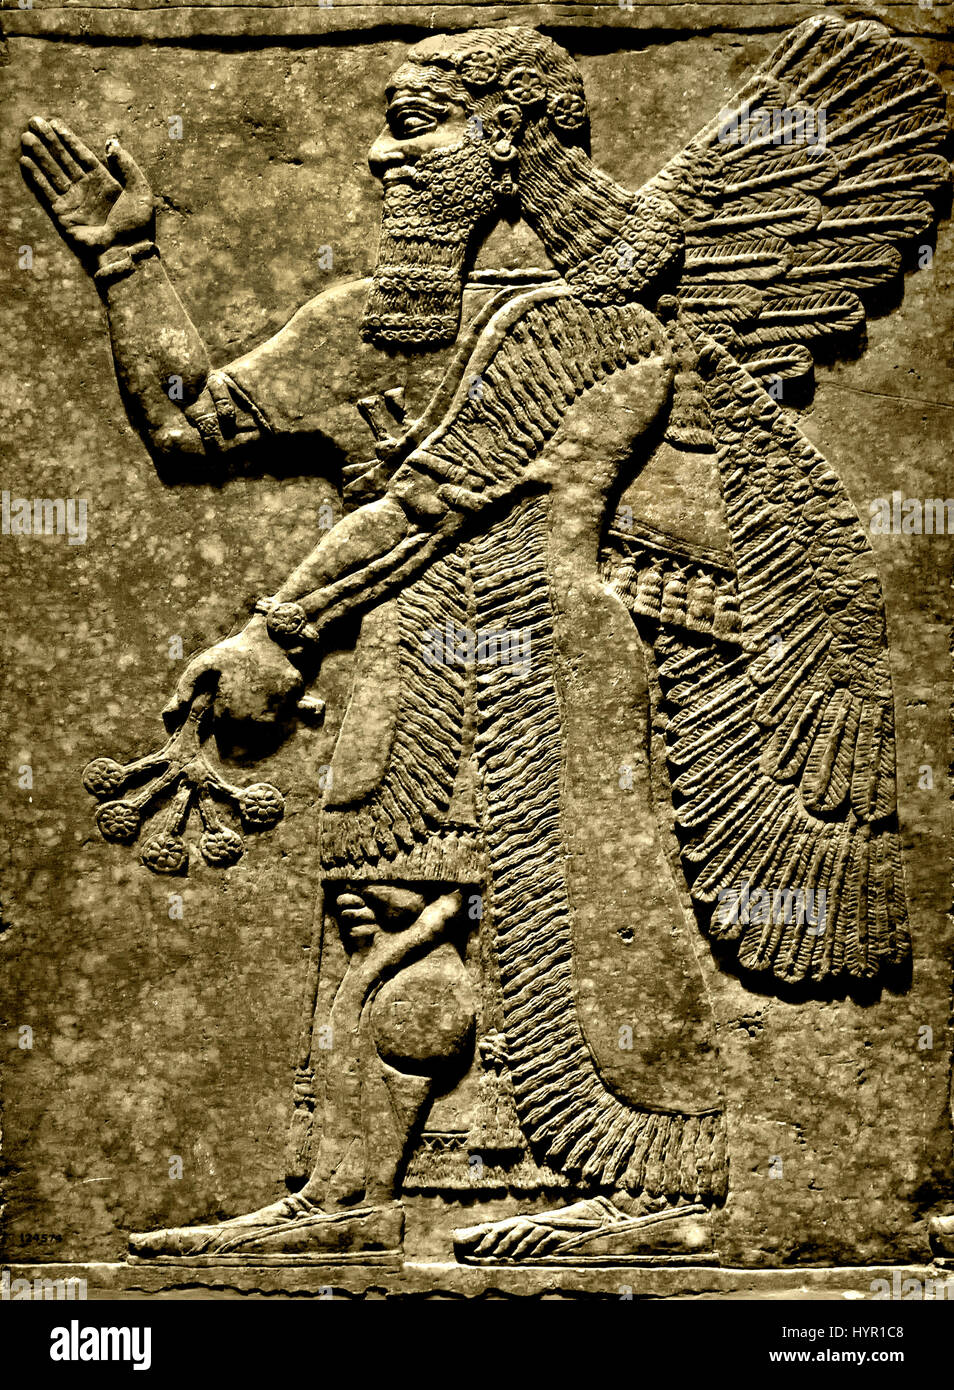 Palais Royal d'Assurnazirpal II Nimrud 883-859 av. J.-C. en Mésopotamie Iraq Kalhu Assyrie esprit protecteur du Temple de Ninurta ( et l'akkadien dieu sumérien de la loi, scribes, l'agriculture et de la chasse. Il était adoré en Babylonie et l'Assyrie et de Lagash.) Banque D'Images